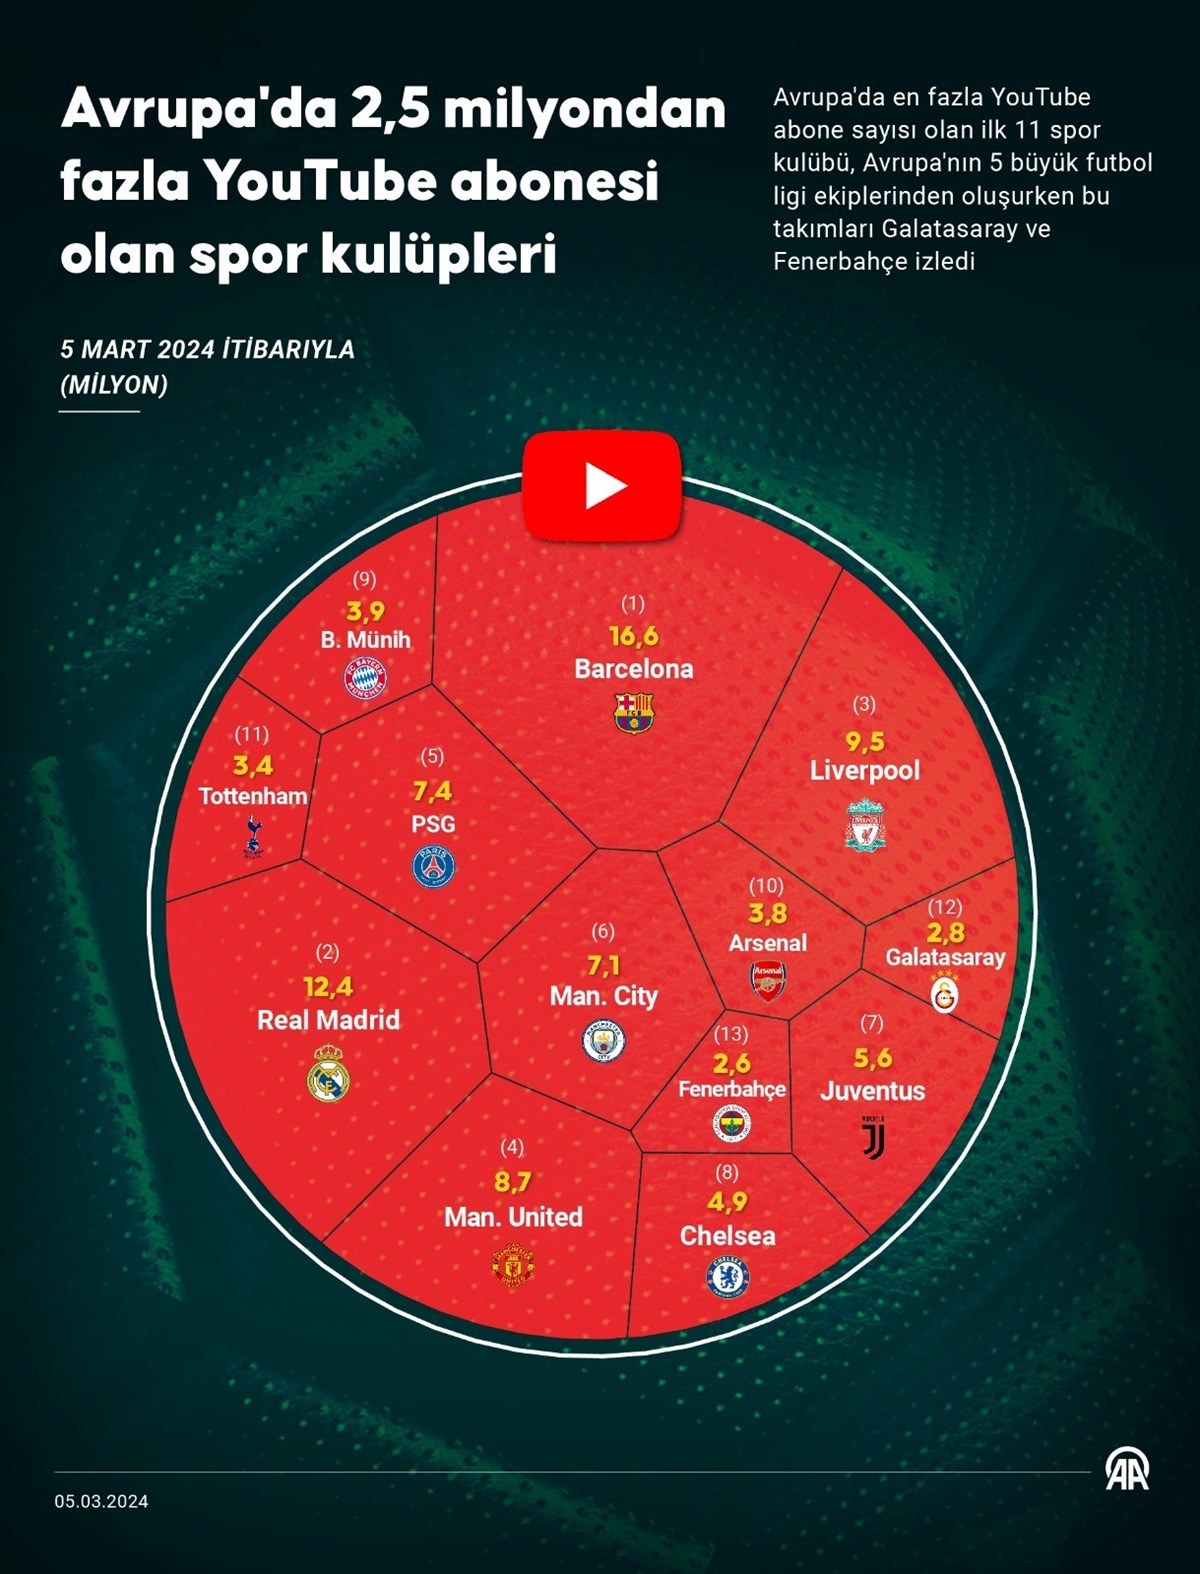 Yarış sosyal medyada da devam ediyor: Galatasaray ve Fenerbahçe dünya devlerini zorluyor